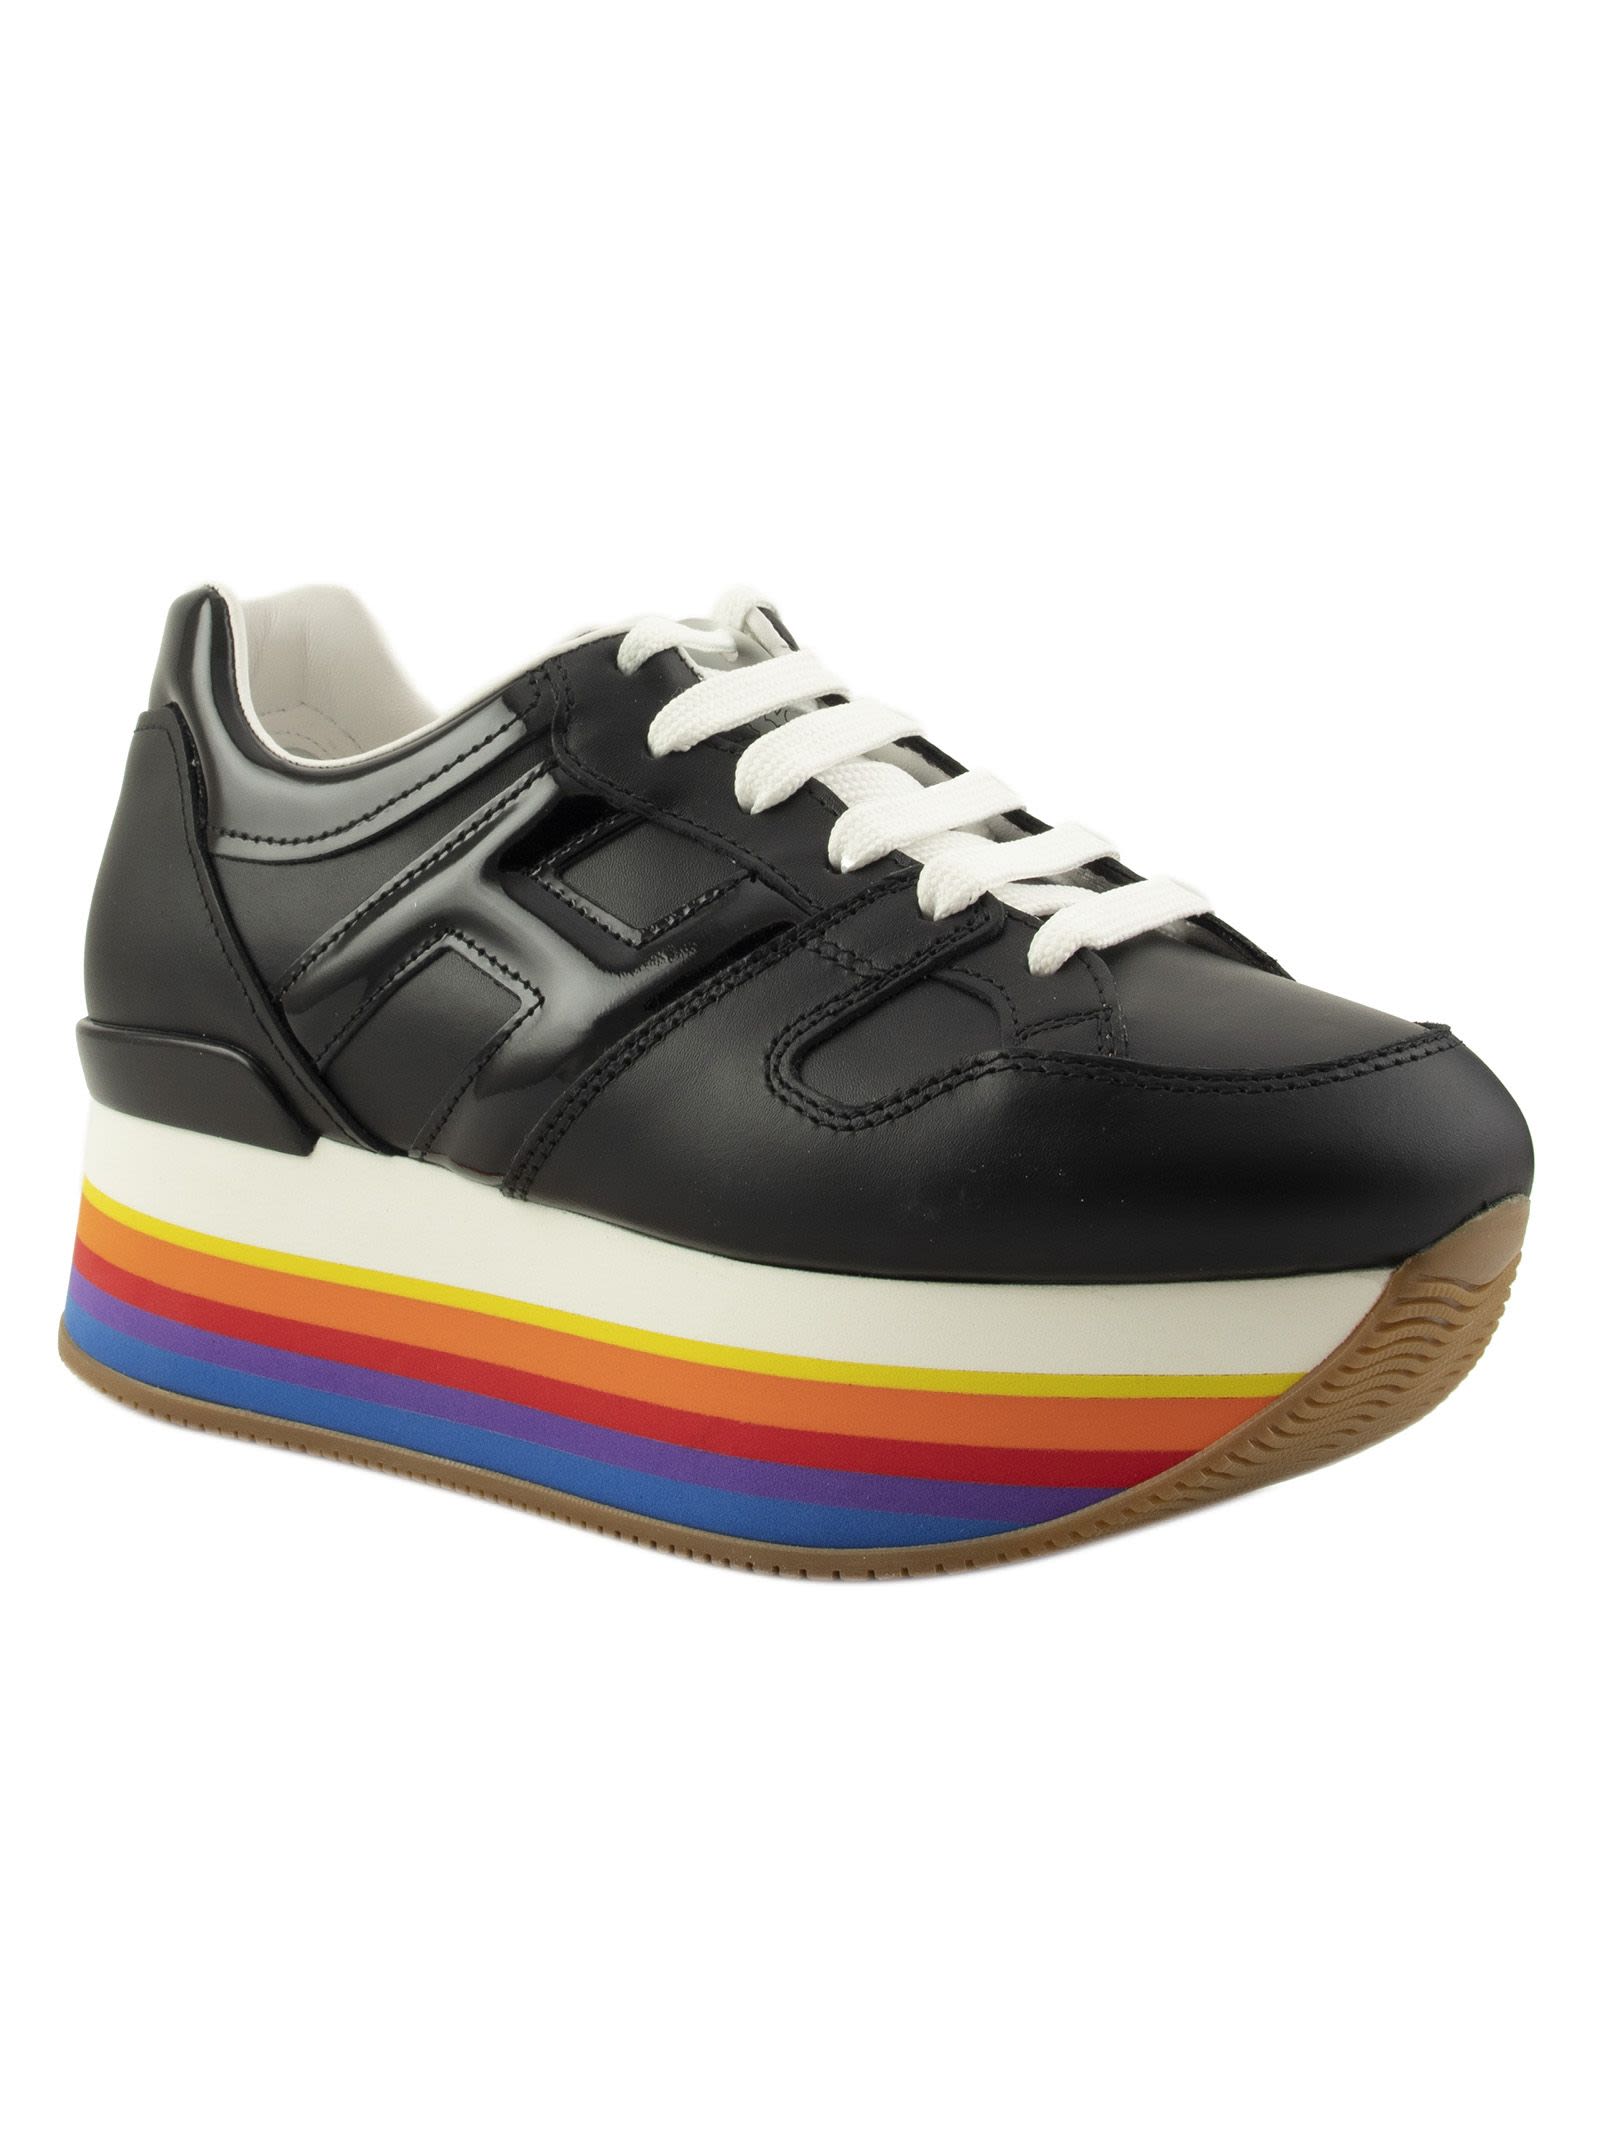 Hogan Hogan Rainbow Platform Sneakers - Black/Multicolor - 10926586 ...